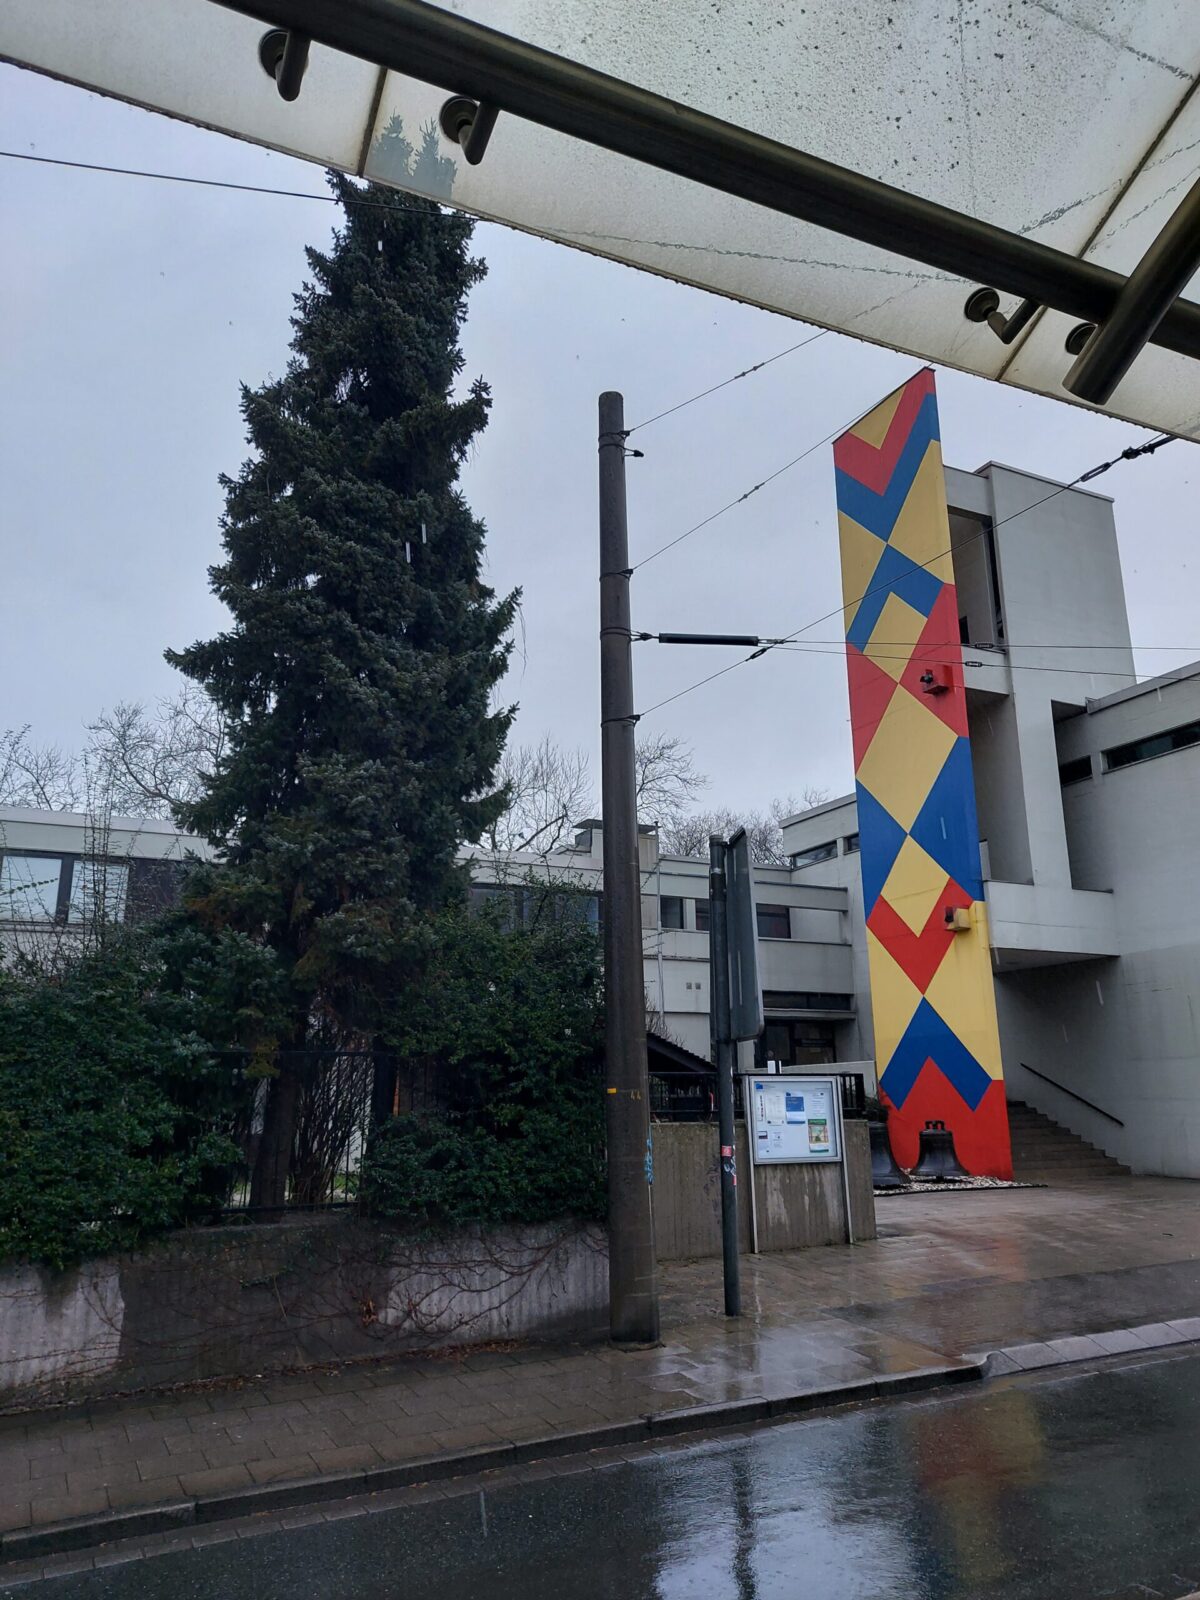 Beispiel-Foto zum Thema #Handy-Malerei. Reihe Primärfarben. Das Foto zeigt den Blick unter dem Dache einer Bahnhaltestelle an einem Regentag. Die Wand eines Gebäudes ist mit einem Rautenmuster in gelb-rot-blau gestrichen.